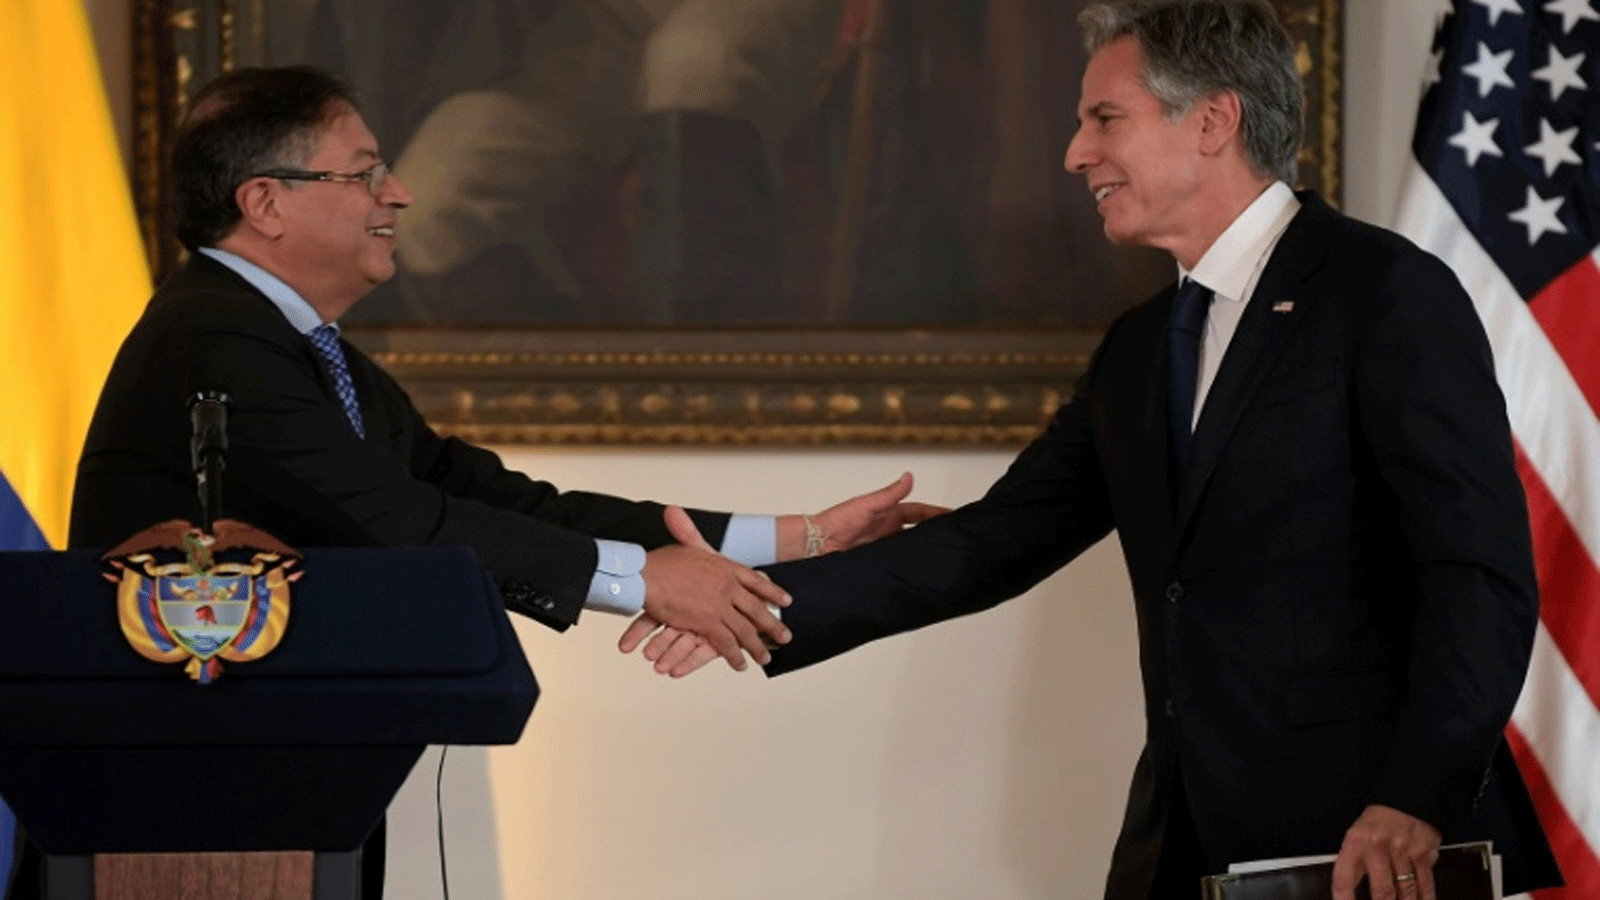  وزير الخارجية الأميركي أنتوني بلينكين مع الرئيس الكولومبي غوستافو بيترو في المحطة الأولى من جولته في أمريكا الجنوبية. 3 أكتوبر\ تشرين الأول 2022